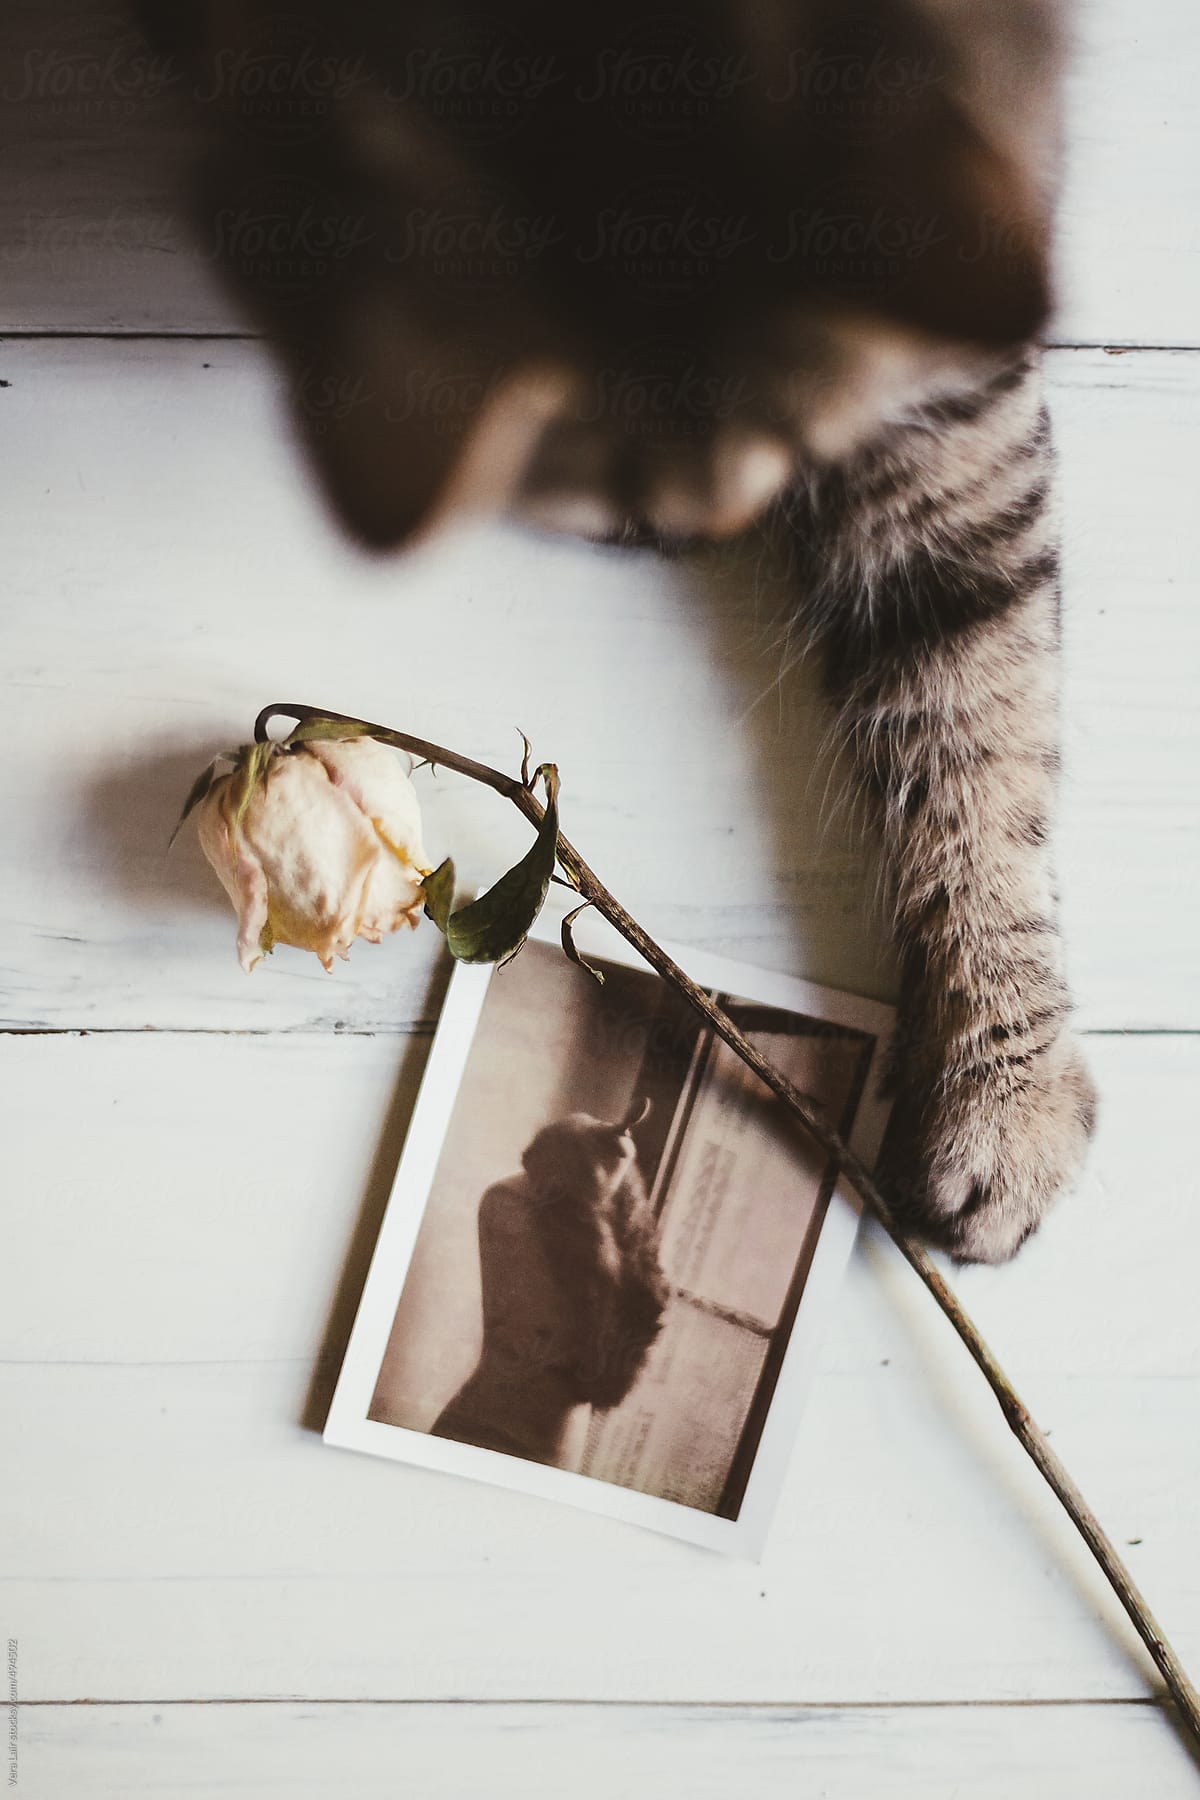 Polaroid. rose and cat